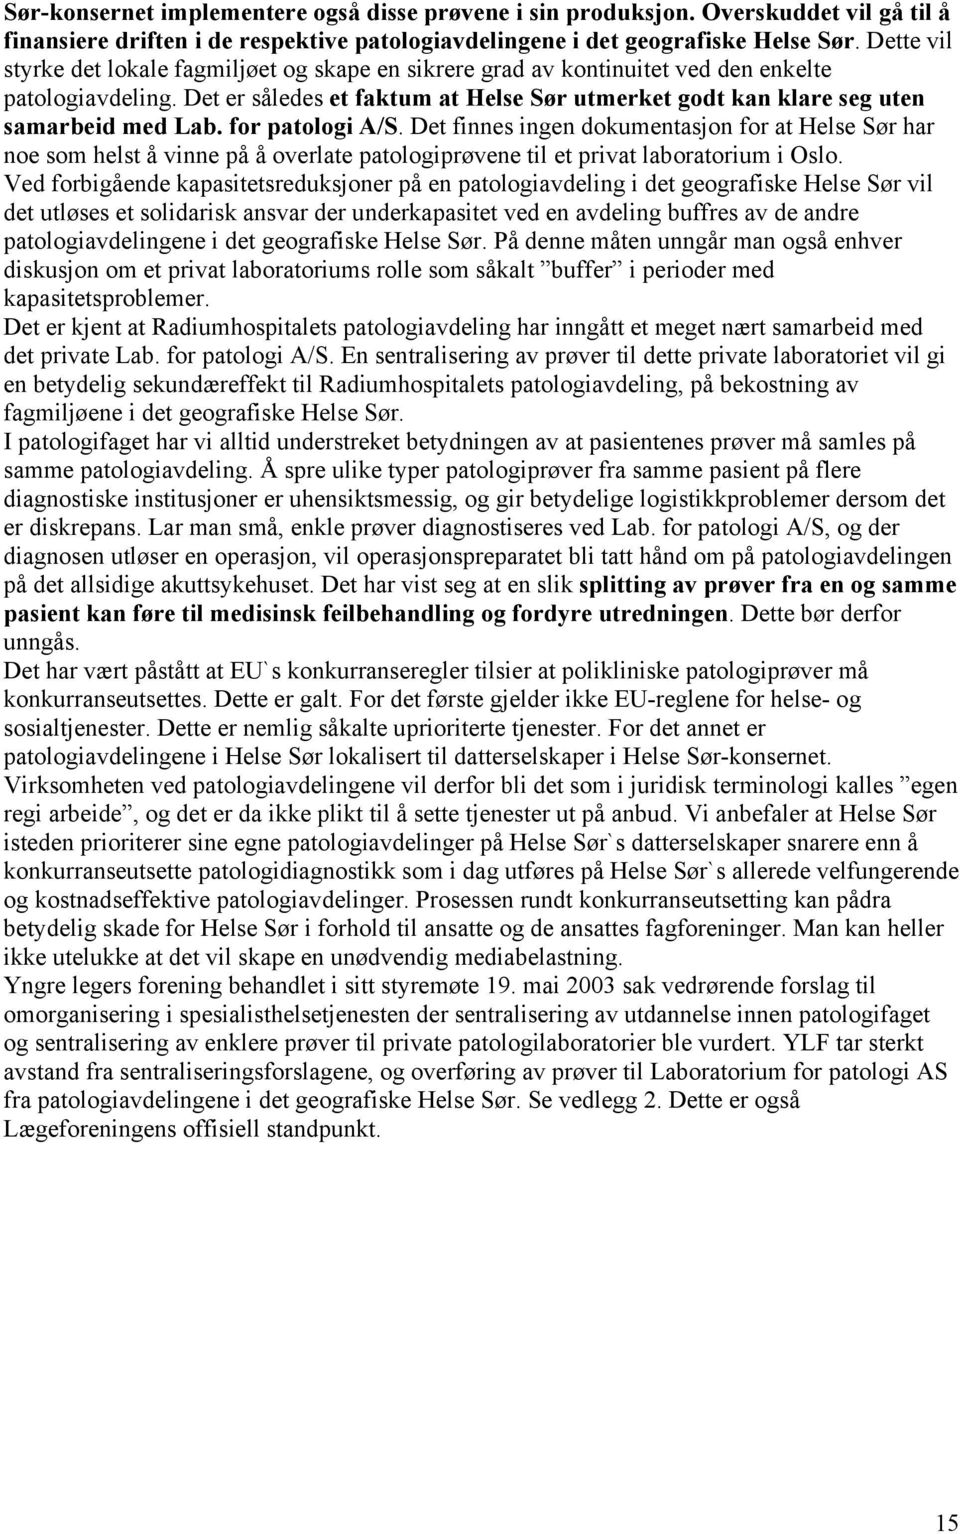 Det er således et faktum at Helse Sør utmerket godt kan klare seg uten samarbeid med Lab. for patologi A/S.